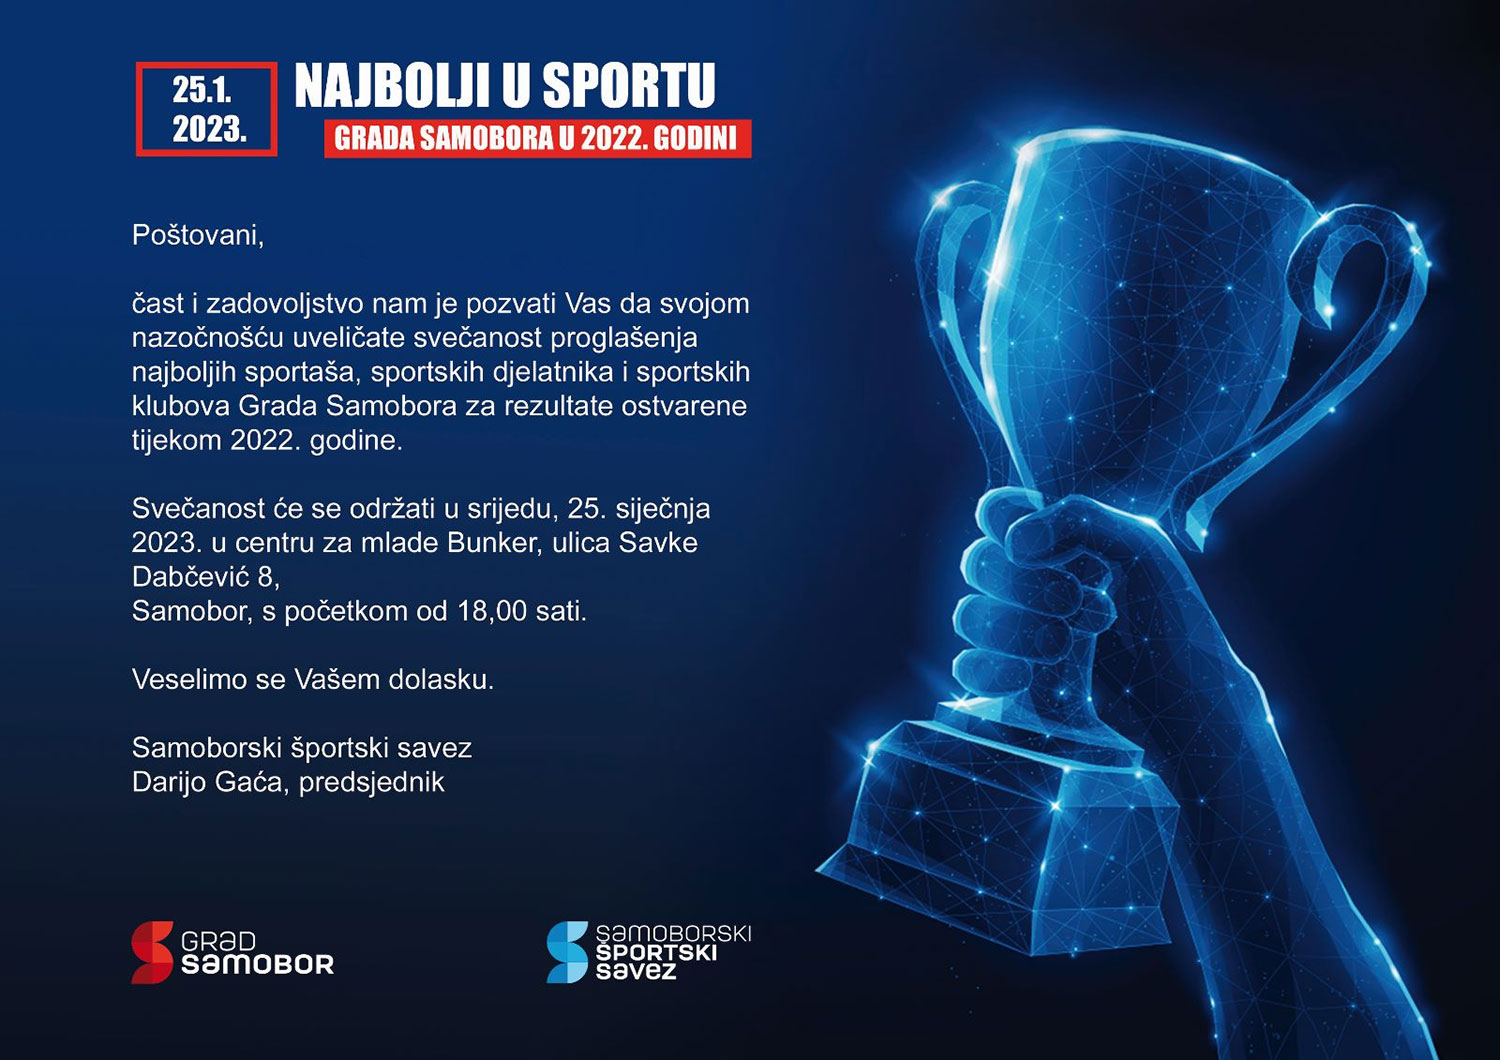 Najava sveanosti proglaenja najboljih u sportu Grada Samobora za 2022. godinu